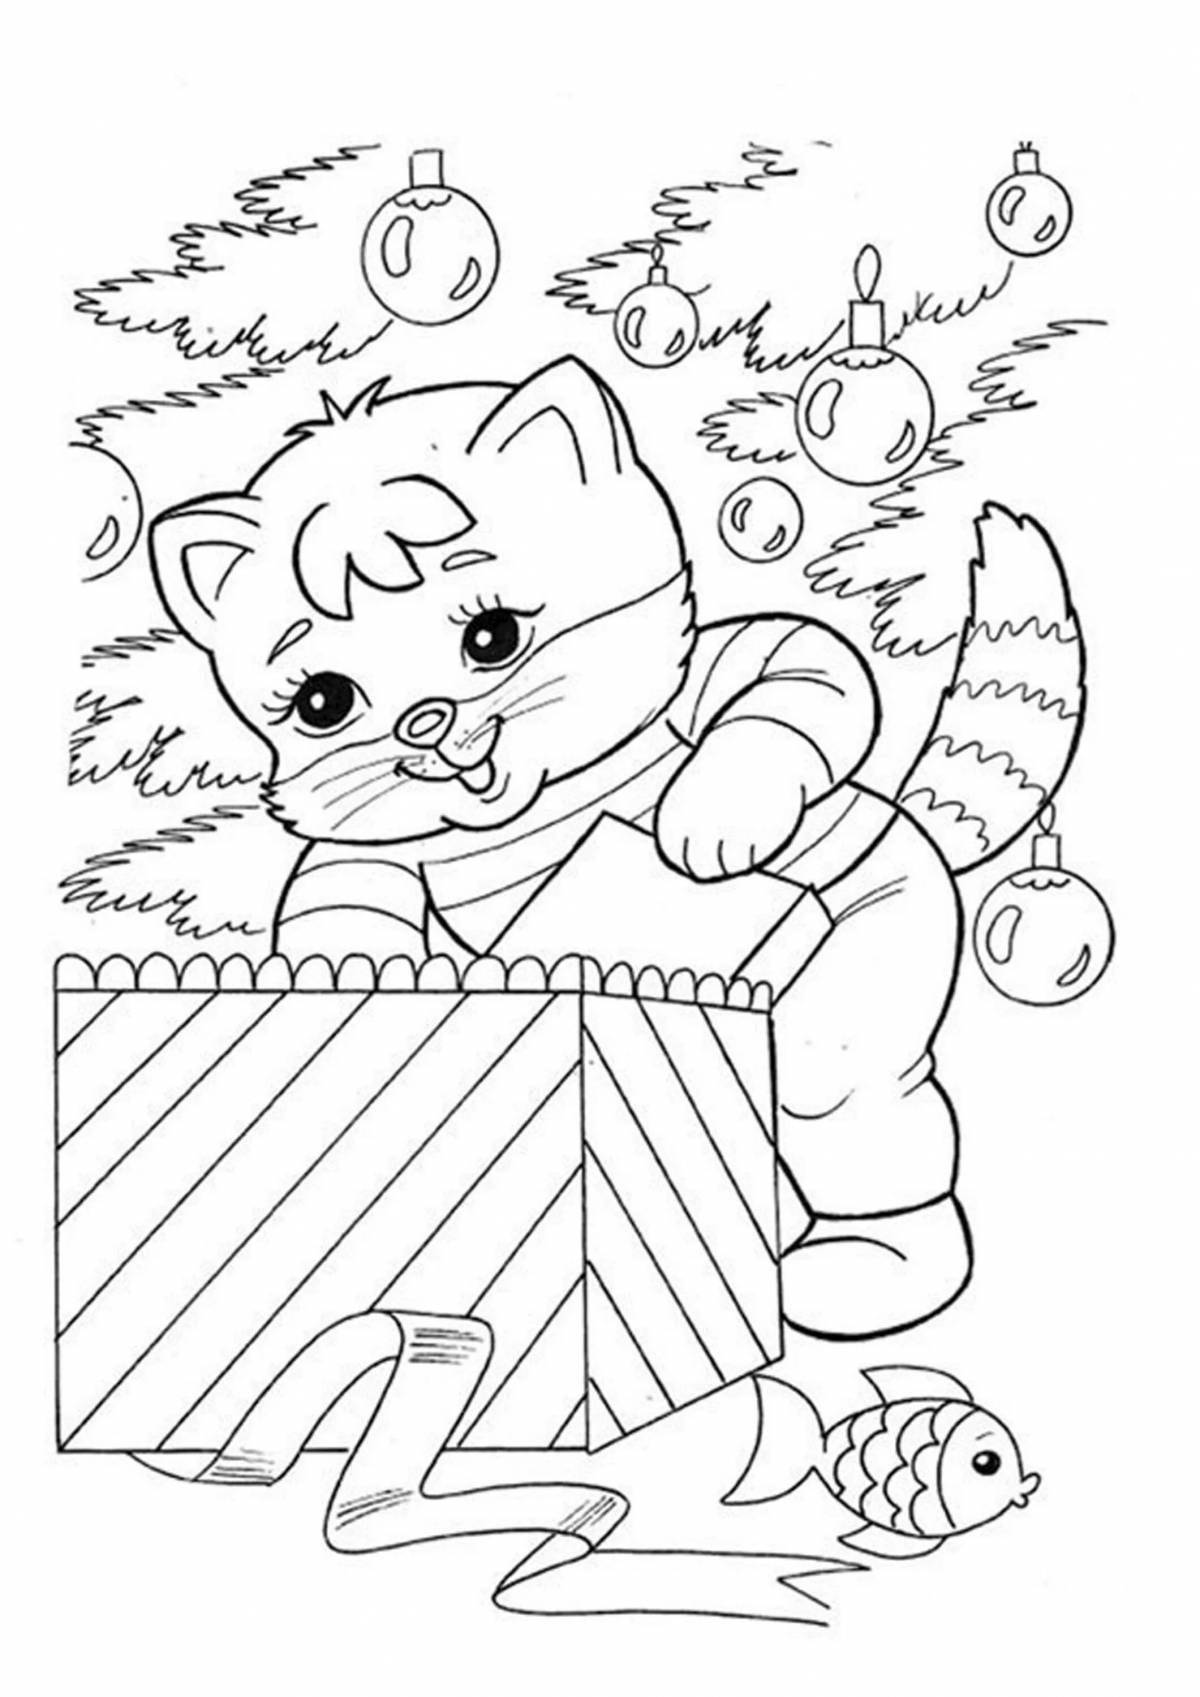 Magic Christmas cat coloring book